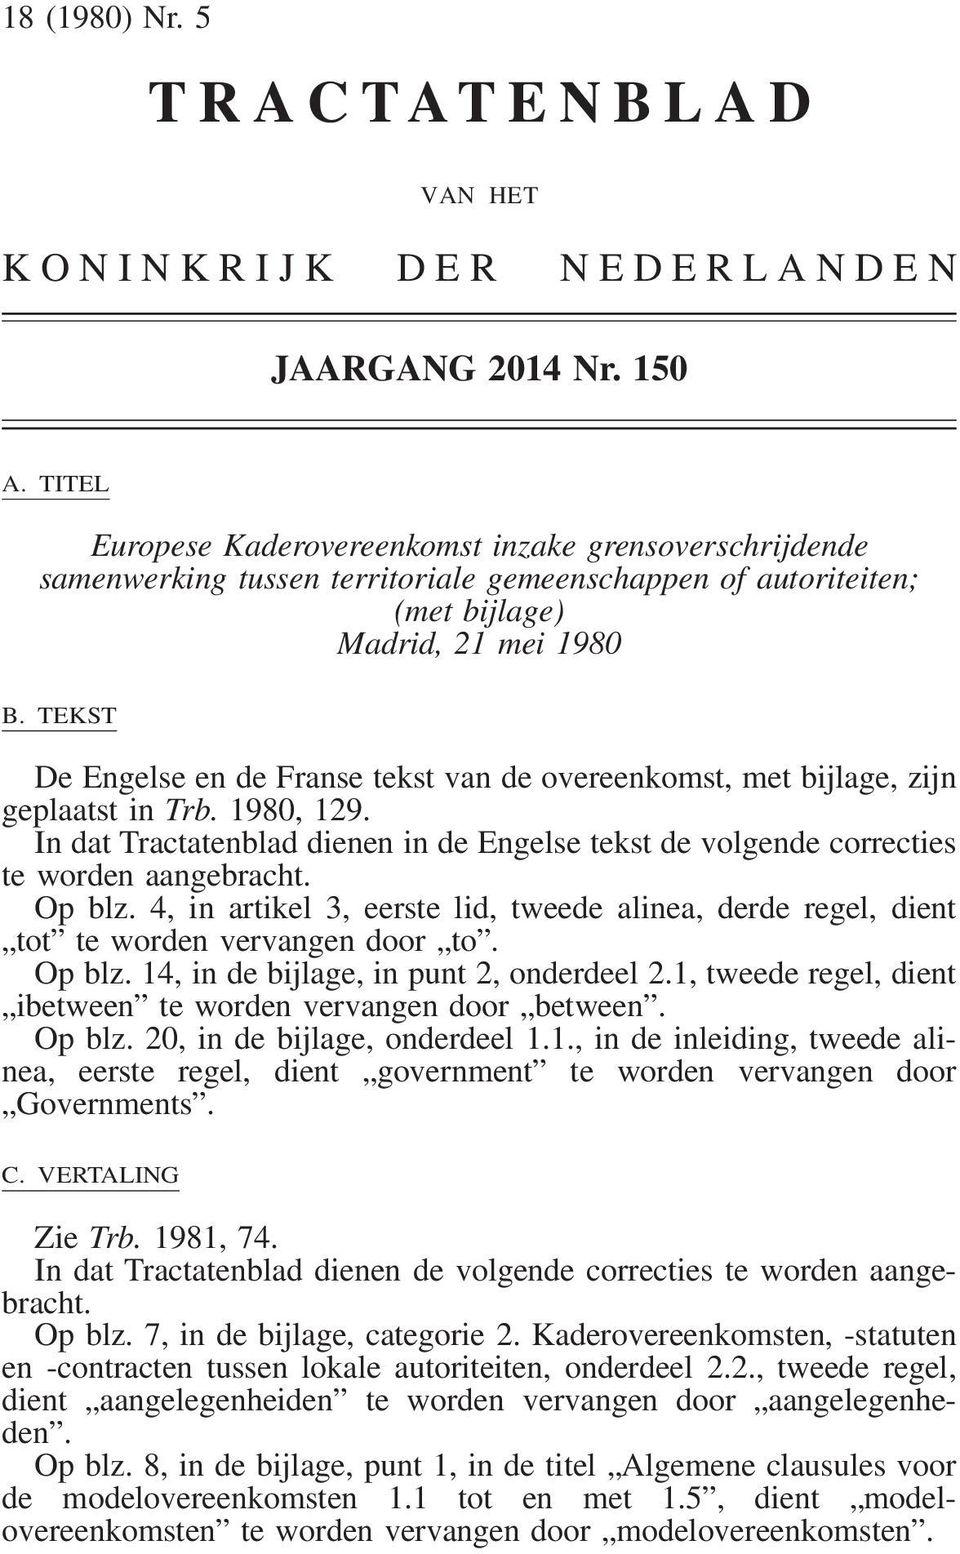 TEKST De Engelse en de Franse tekst van de overeenkomst, met bijlage, zijn geplaatst in Trb. 1980, 129. In dat Tractatenblad dienen in de Engelse tekst de volgende correcties te worden aangebracht.